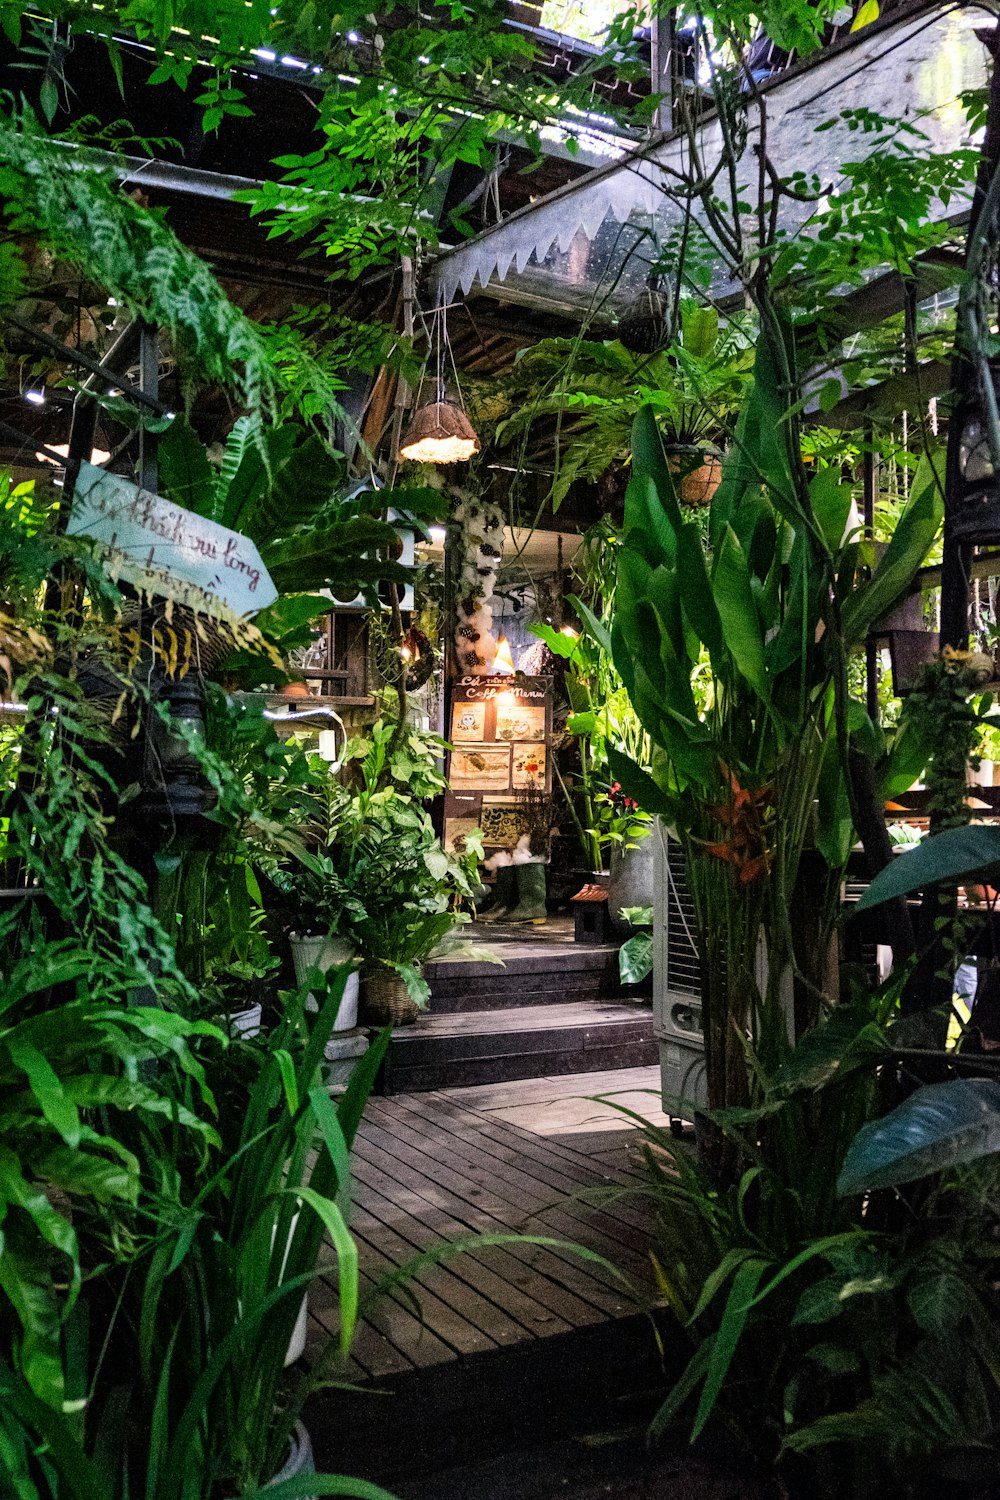 El interior de un invernadero lleno de muchas plantas